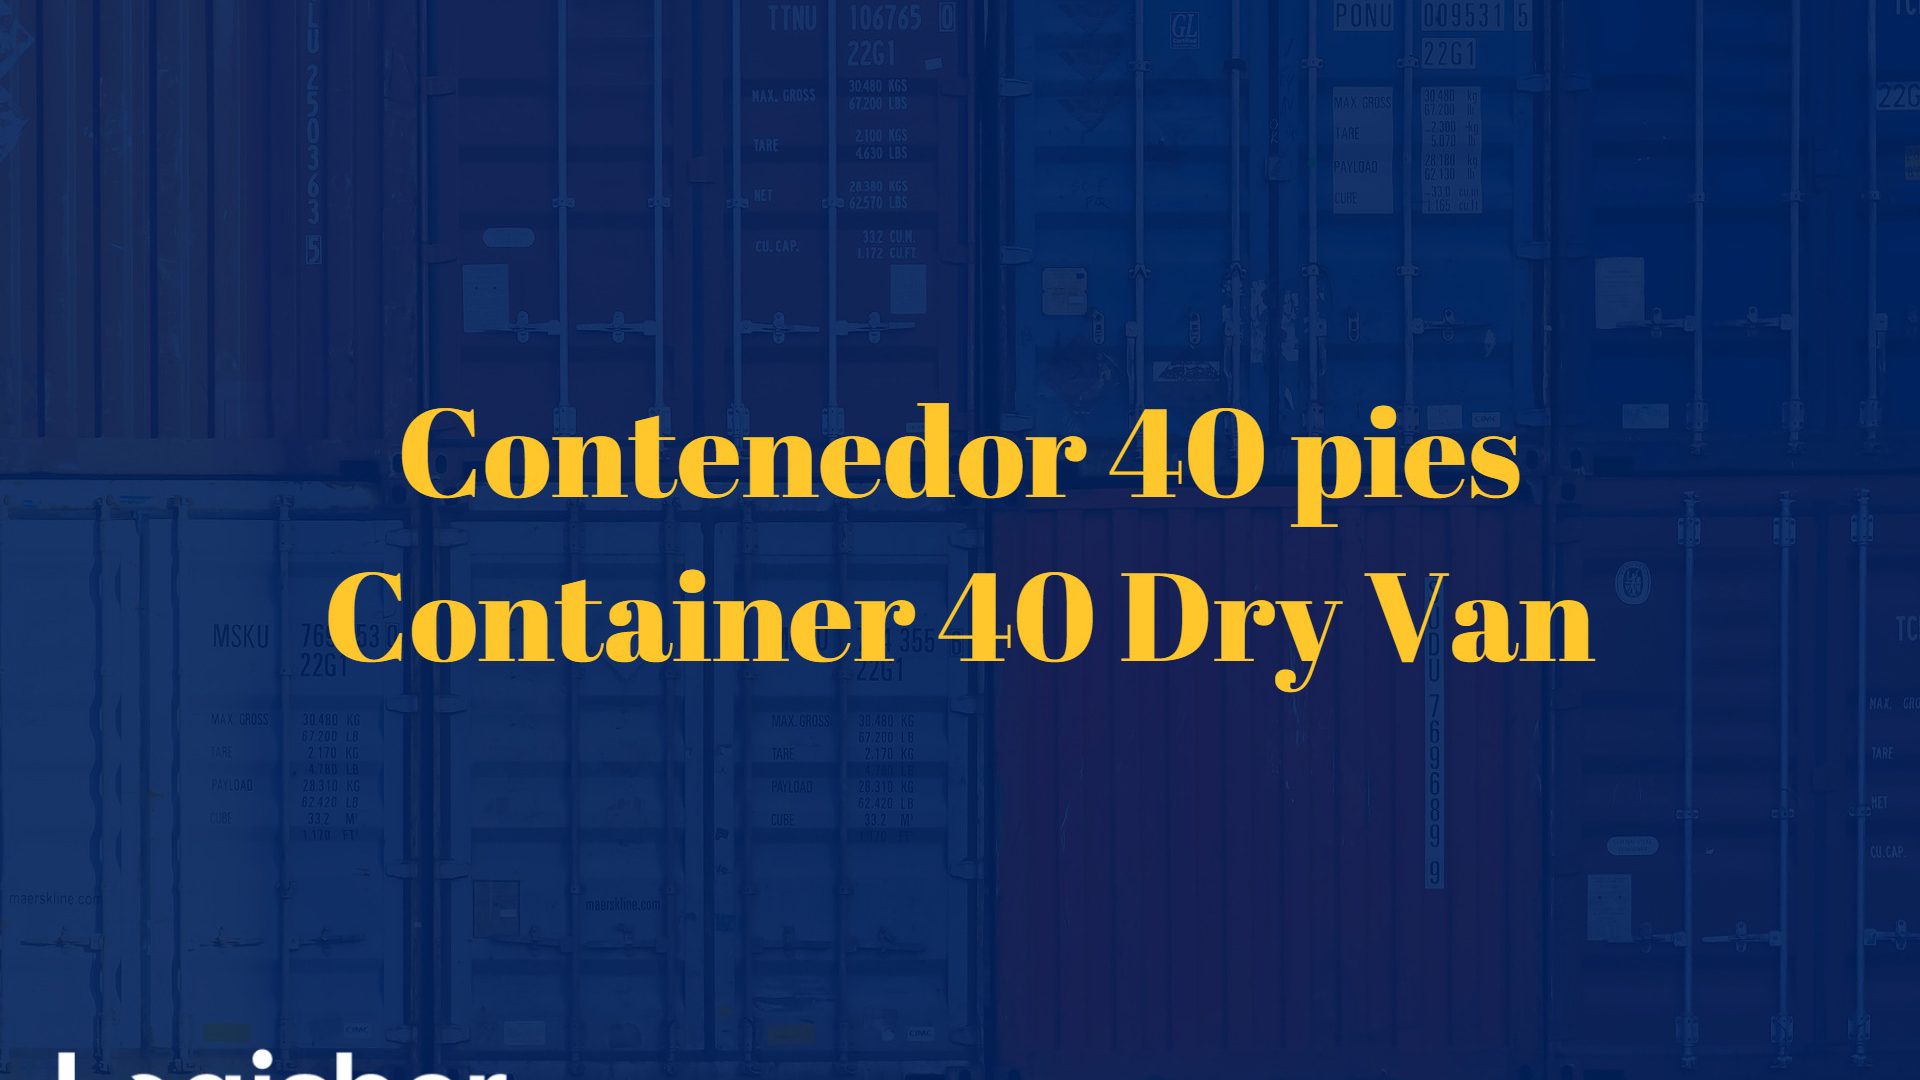 Contenedor 40 pies - Container 40 Dry Van